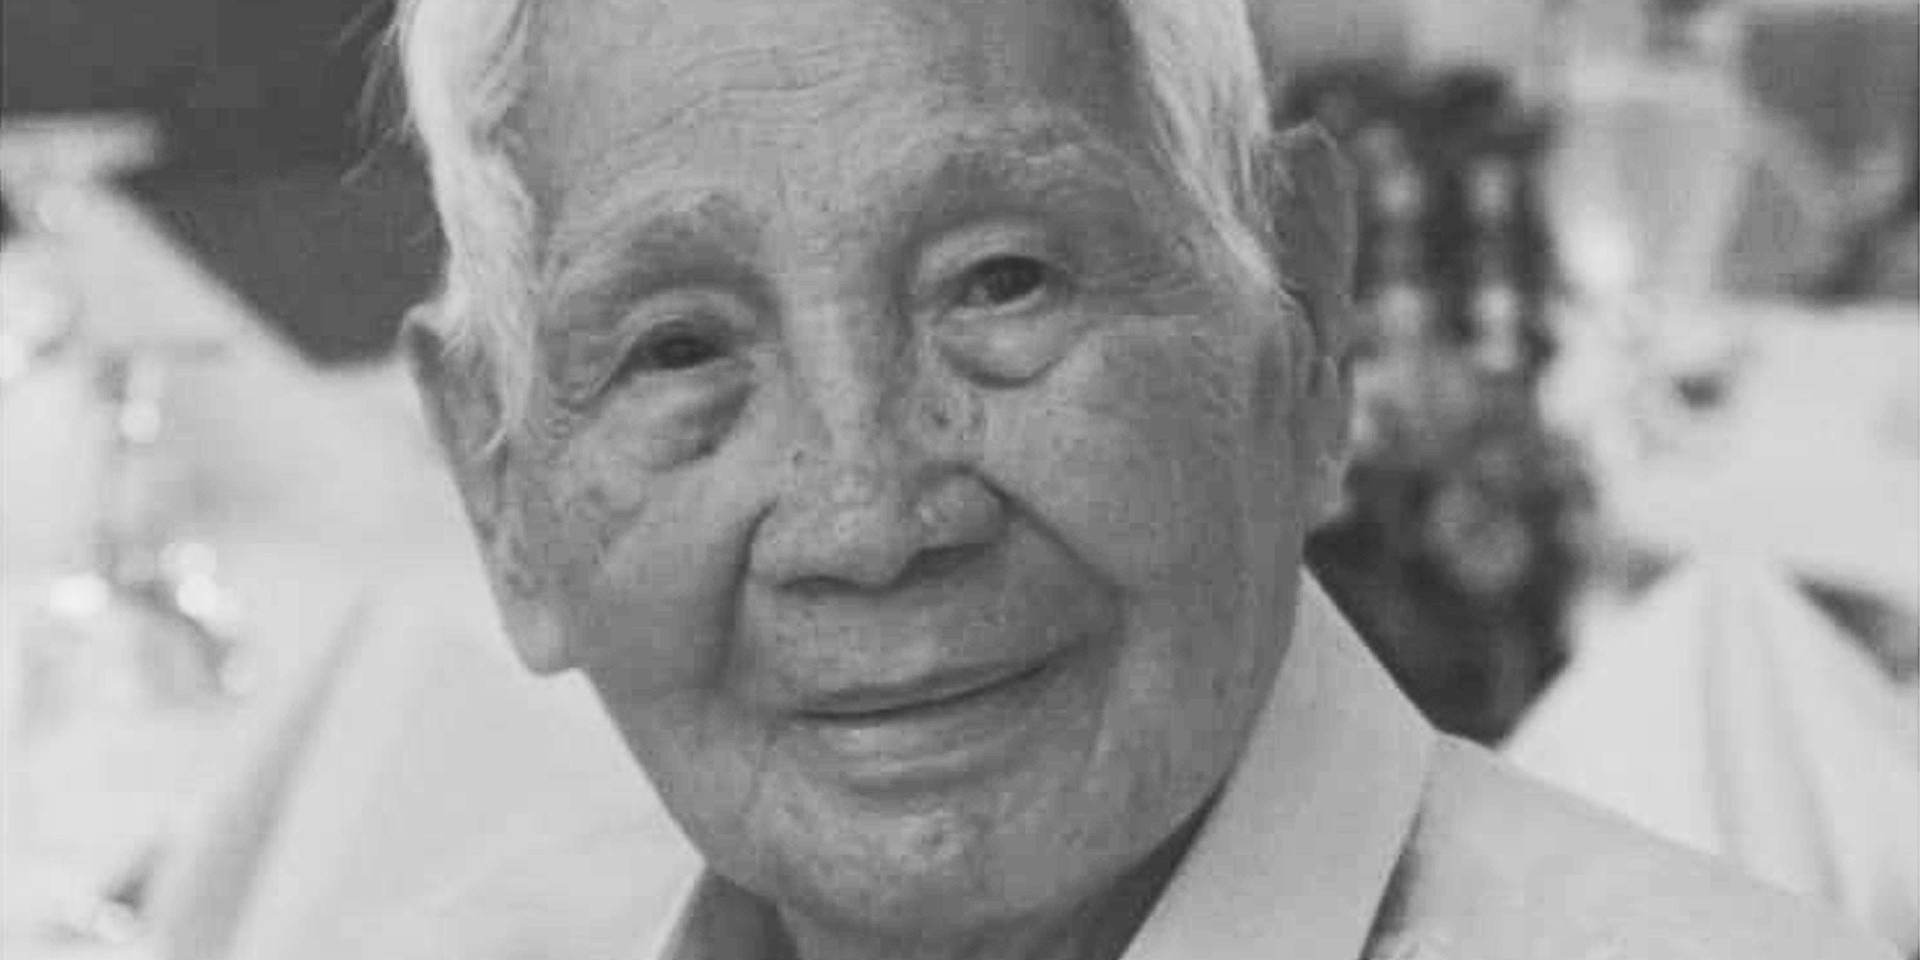 Lyric founder Severo “Lolo Berong” Panganiban passes away at 94